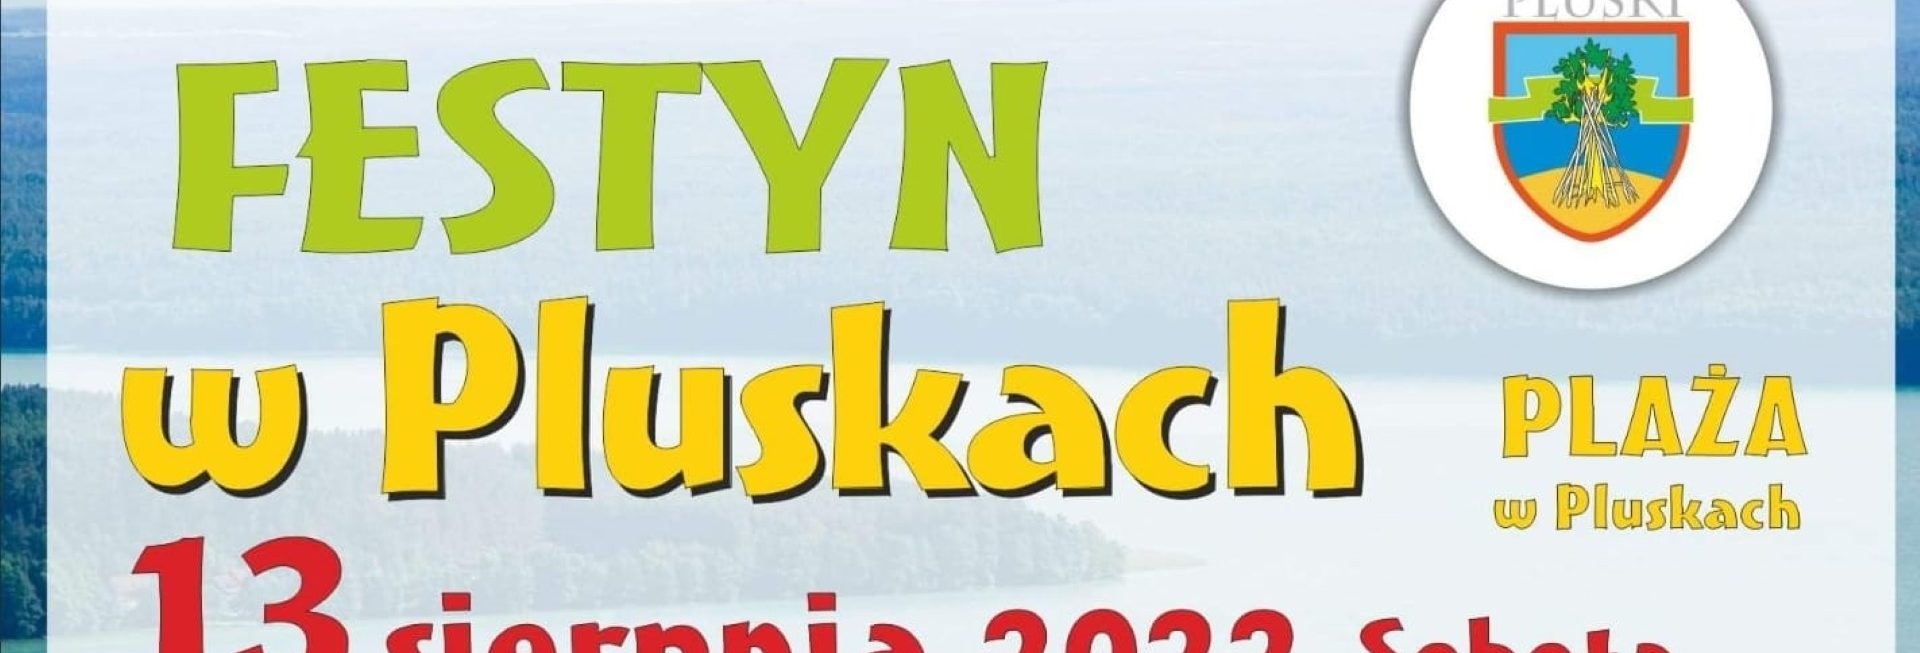 Plakat zapraszający do miejscowości Pluski w gminie Stawiguda na wydarzenie Festyn w Pluskach 2022.